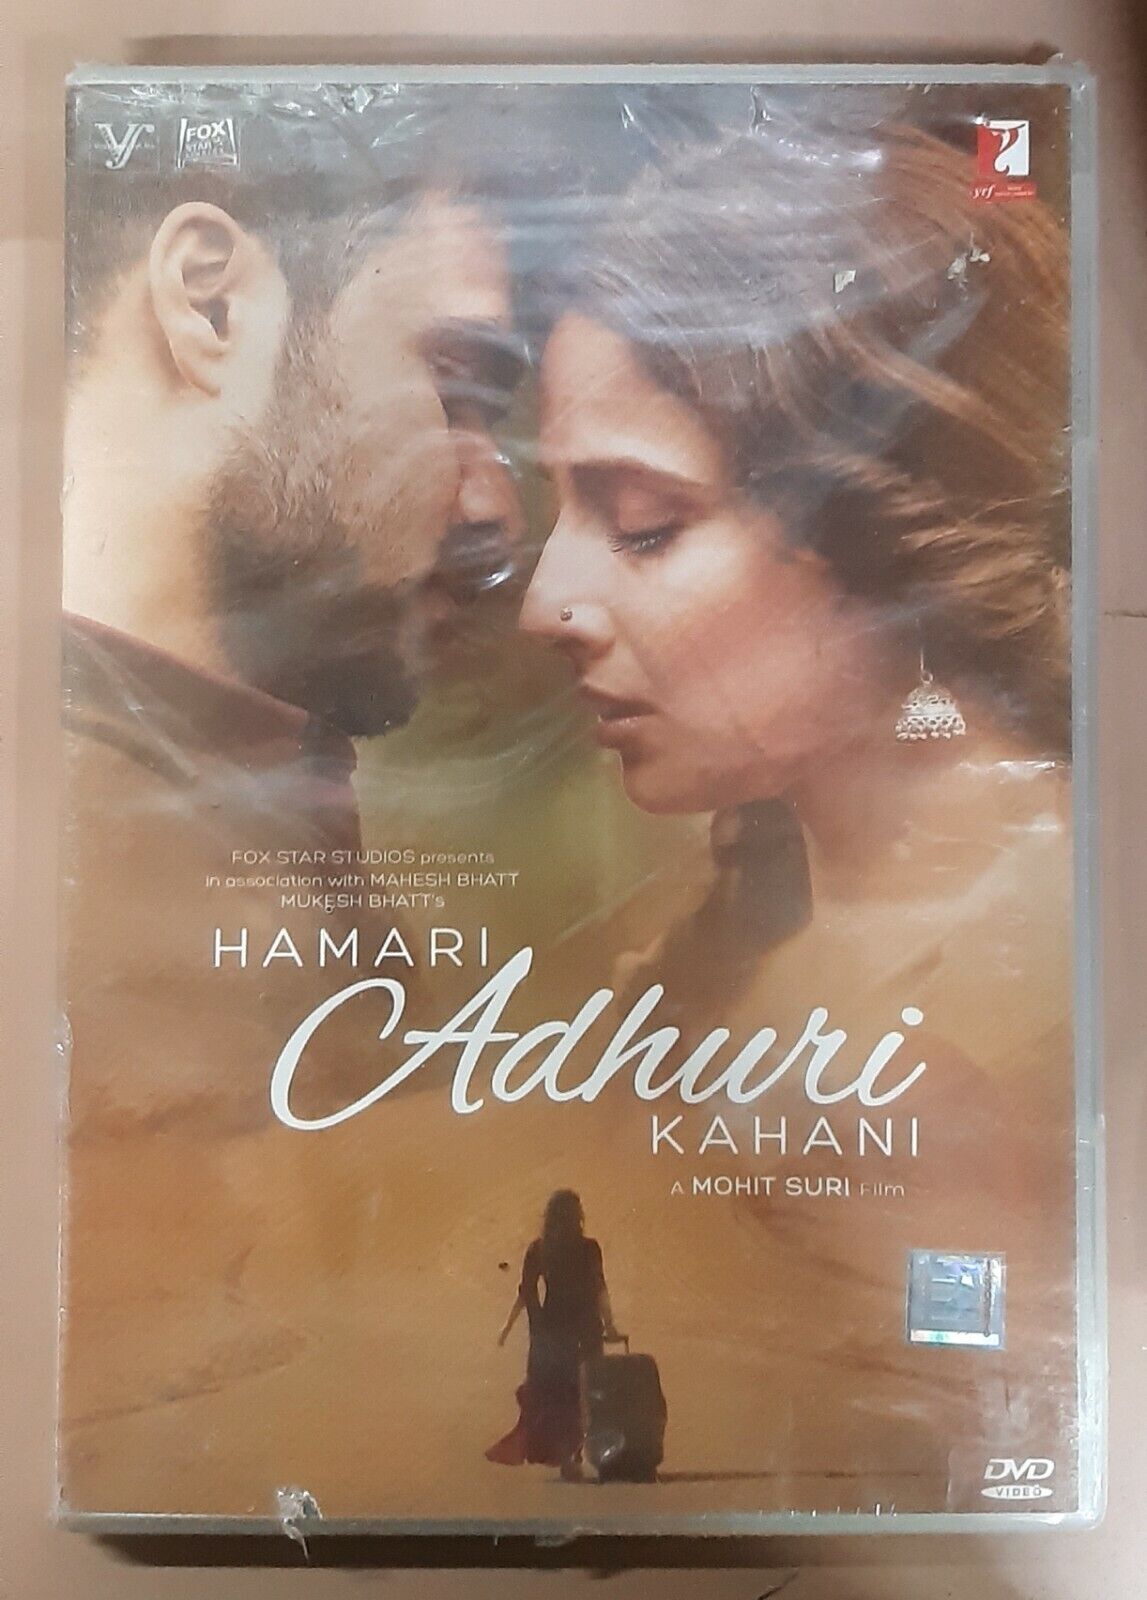 Hamari Adhuri Kahani - Emran Hashmi, Vidya - Bollywood Movie DVD (Region  Free) 8902797660837 | eBay